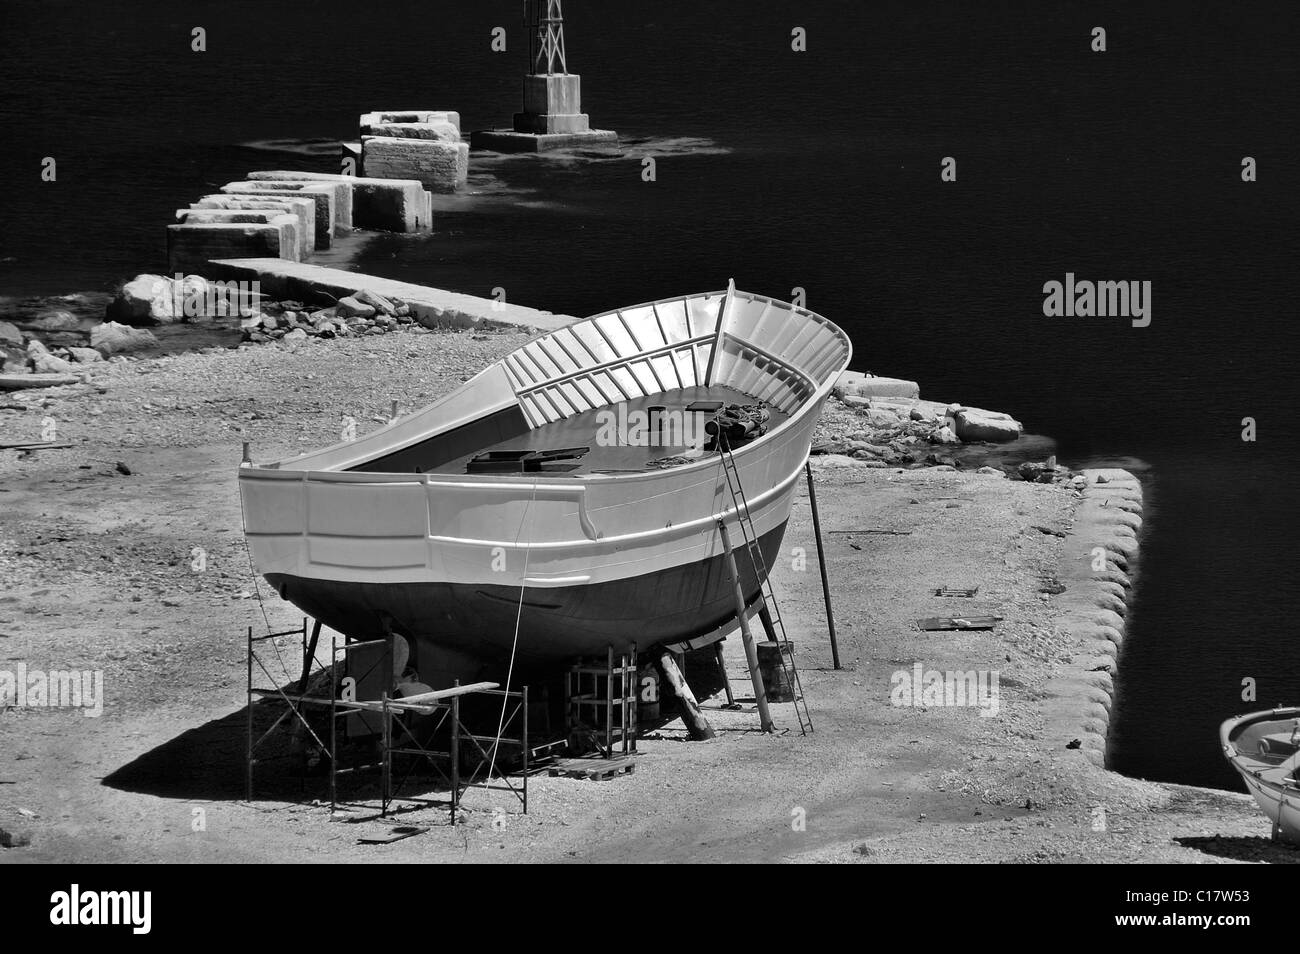 Bateau en bois au chantier naval dans le port de Zakynthos, Grèce. Noir et blanc. Banque D'Images